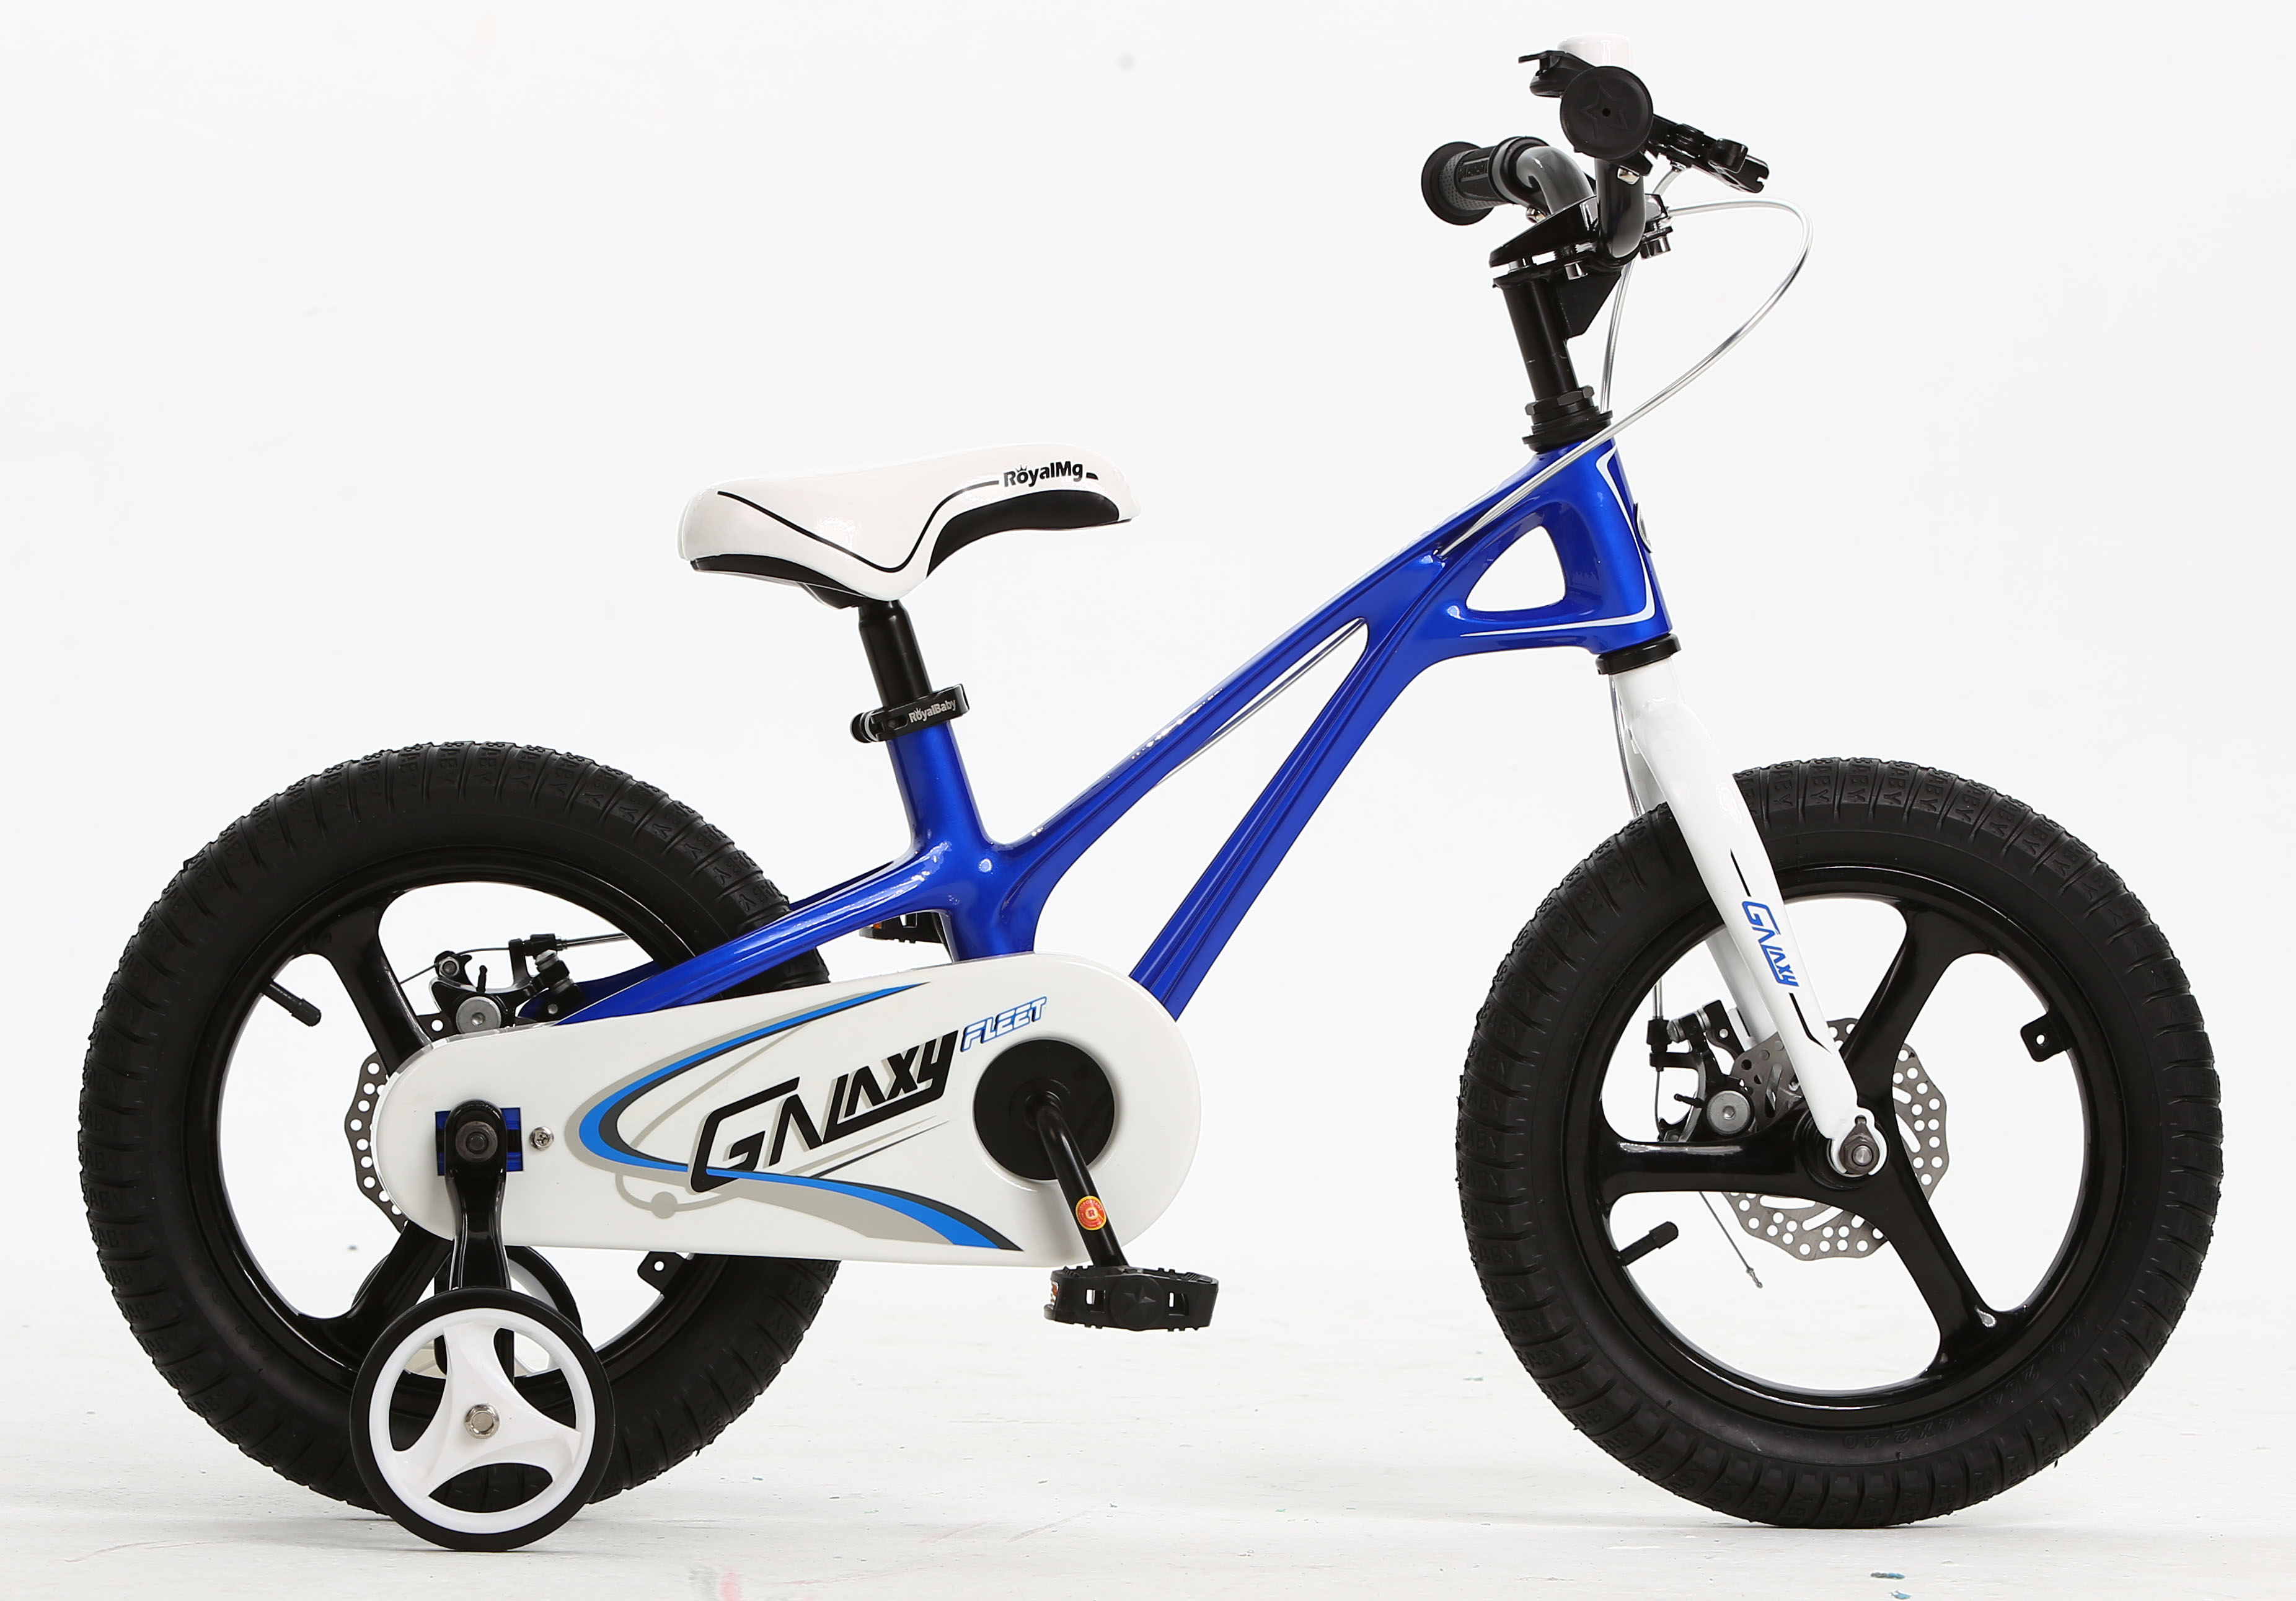  Отзывы о Детском велосипеде Royal Baby Galaxy Fleet 18 2021